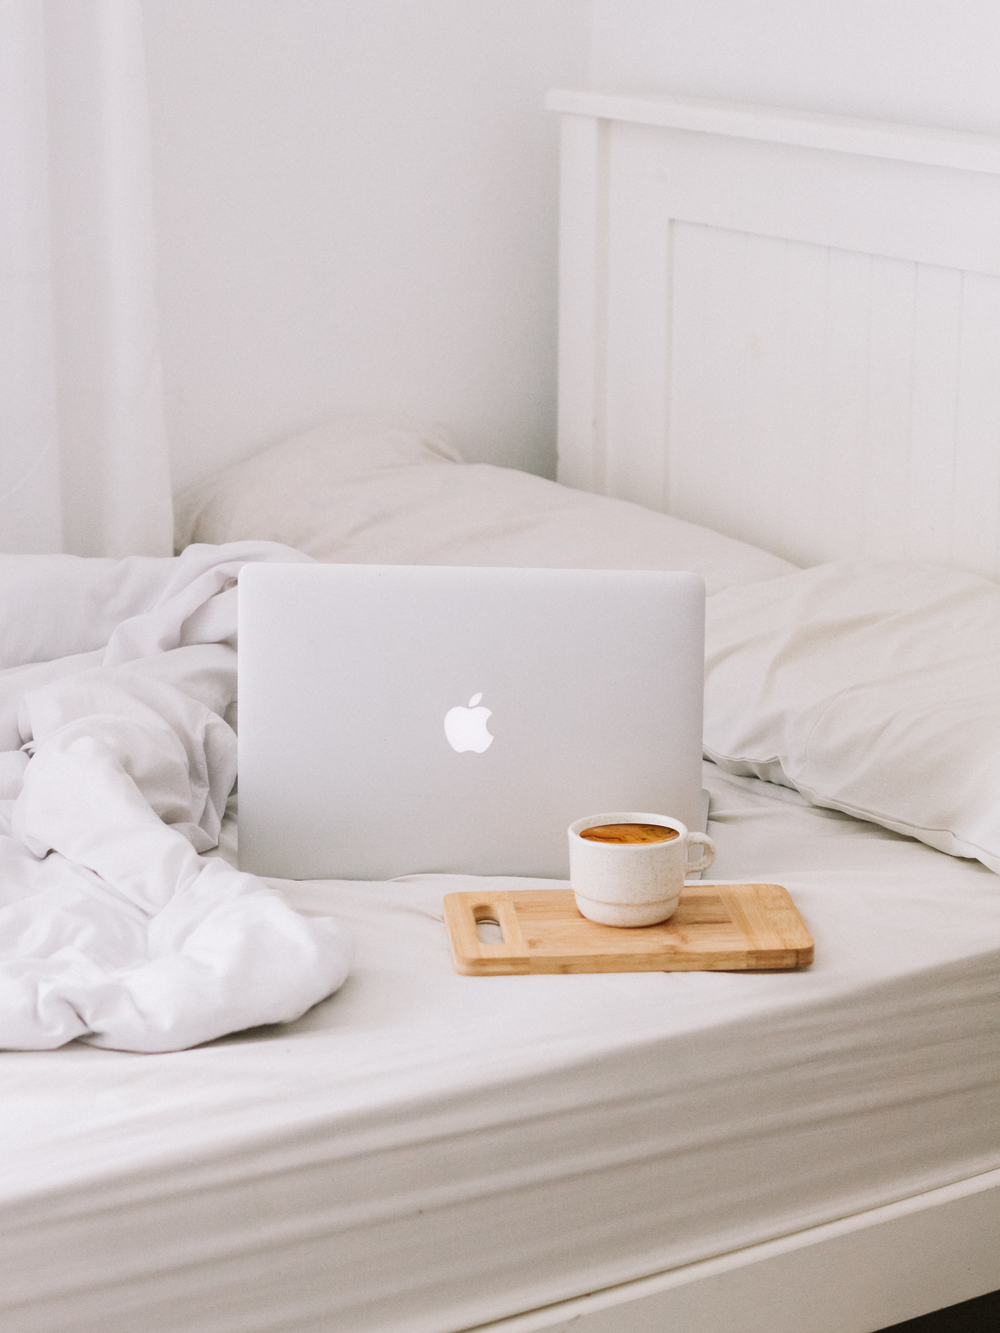 MacBook accanto a tazza da tè con latte